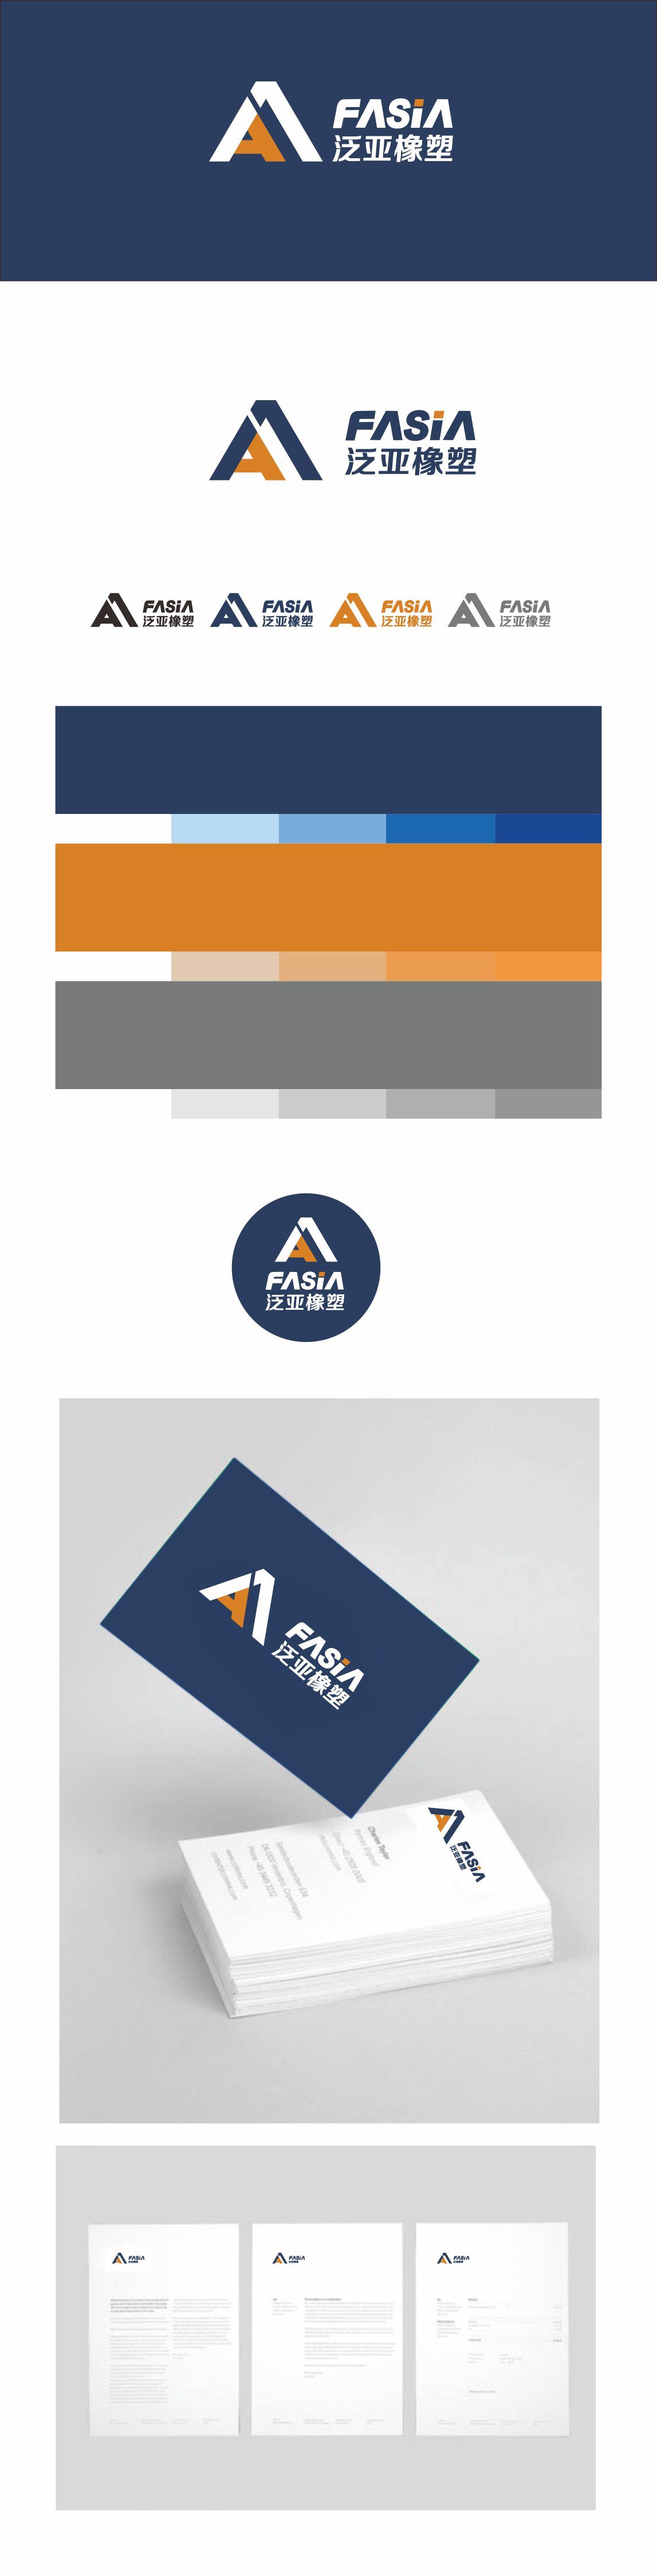 江苏泛亚橡塑新材料有限公司logo设计图1